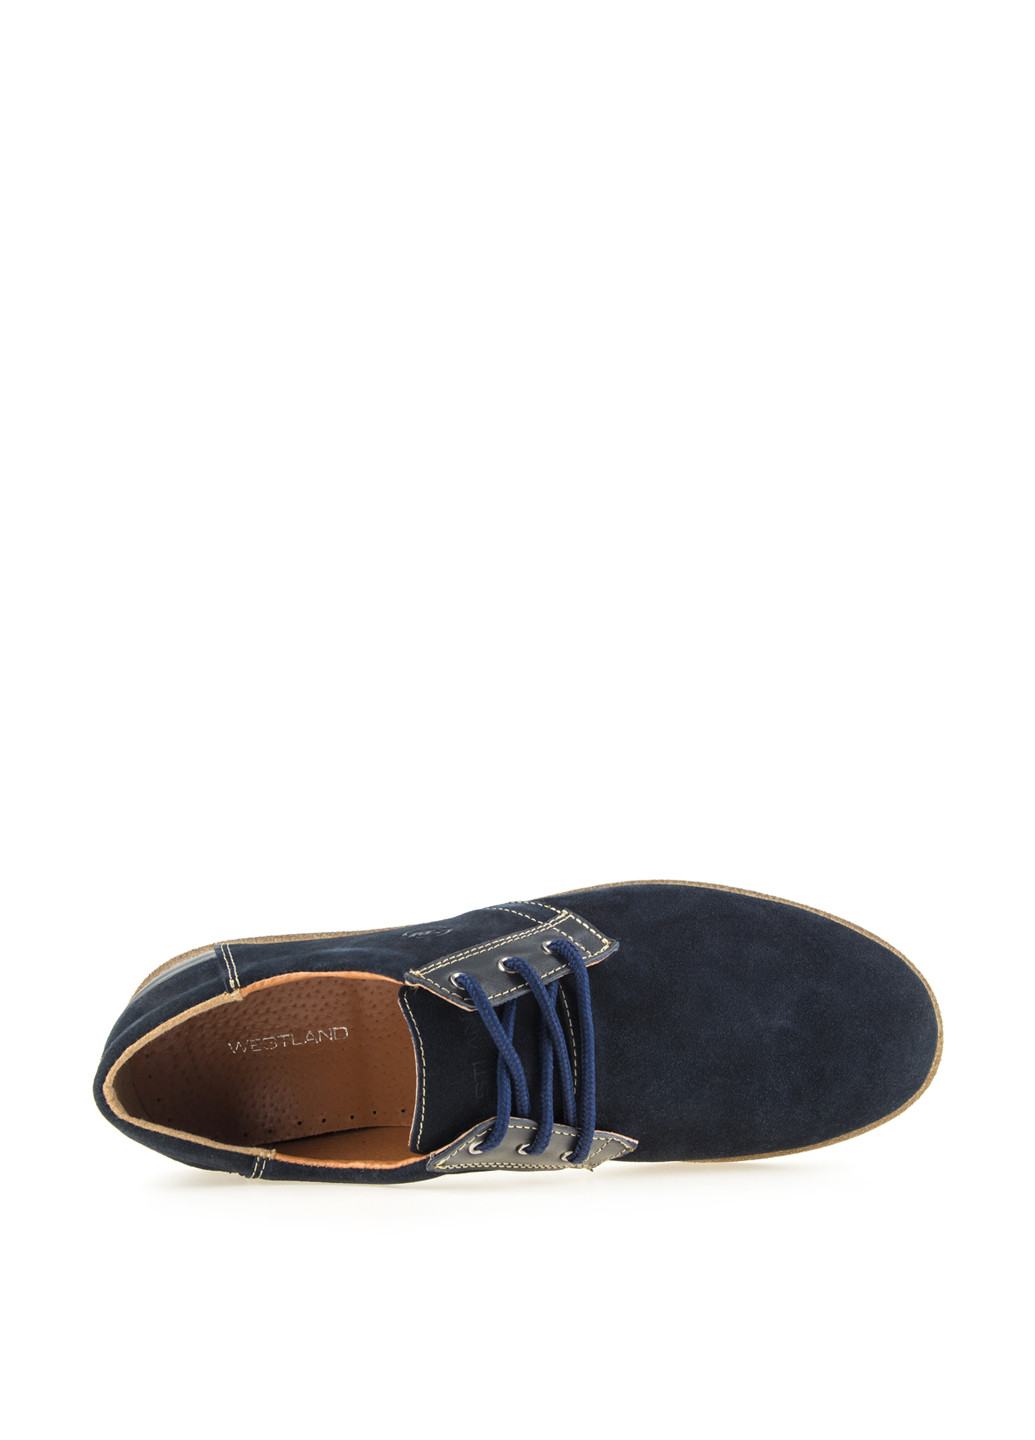 Темно-синие спортивные туфли Westland на шнурках